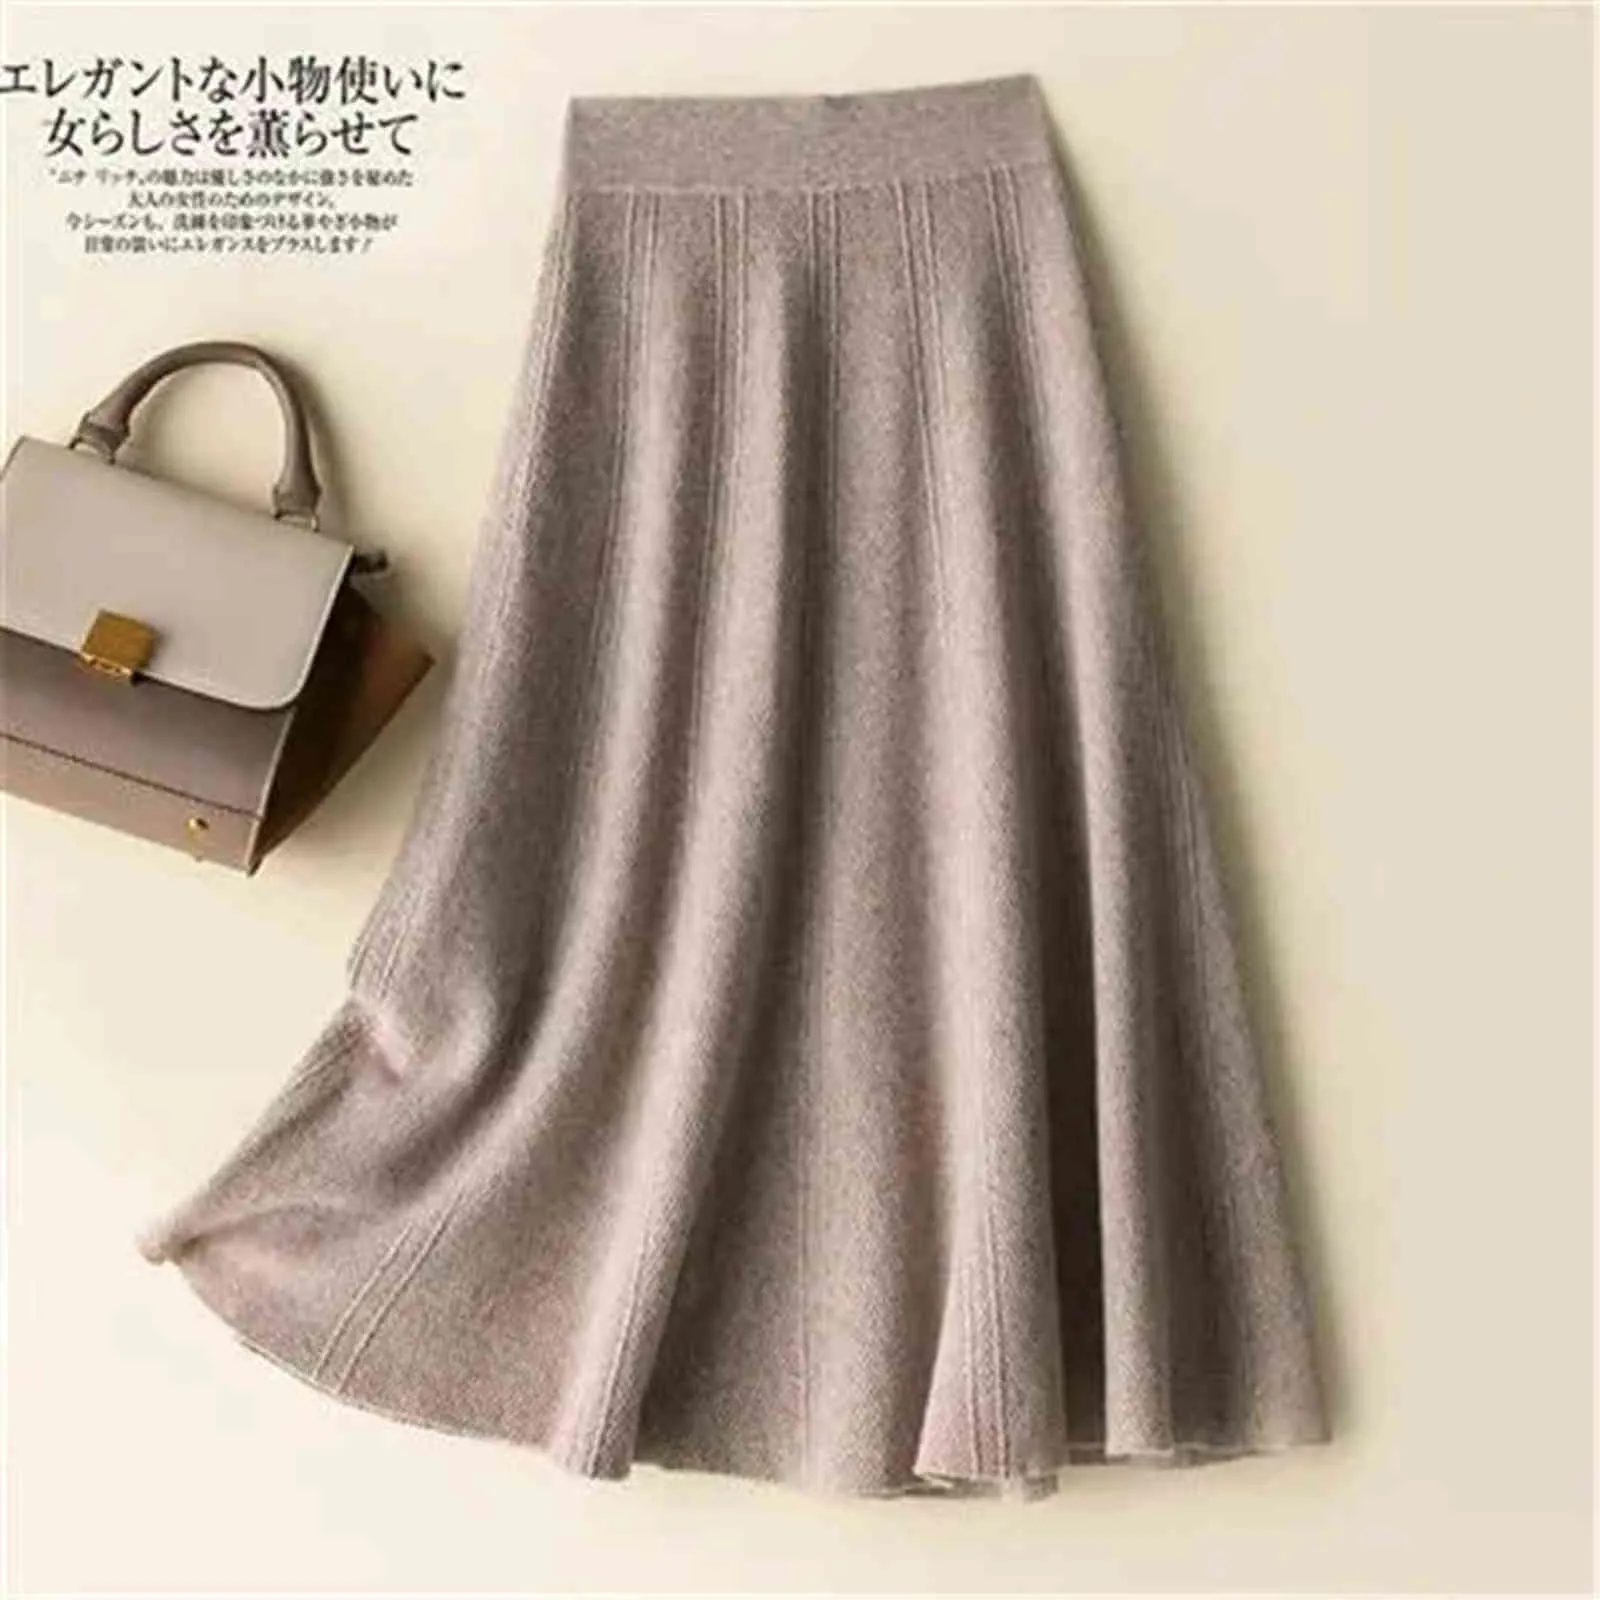 Vintage marrón de punto falda larga Otoño Invierno mujer Casual sólido una línea falda coreana mujer negro cintura alta Midi falda 211120